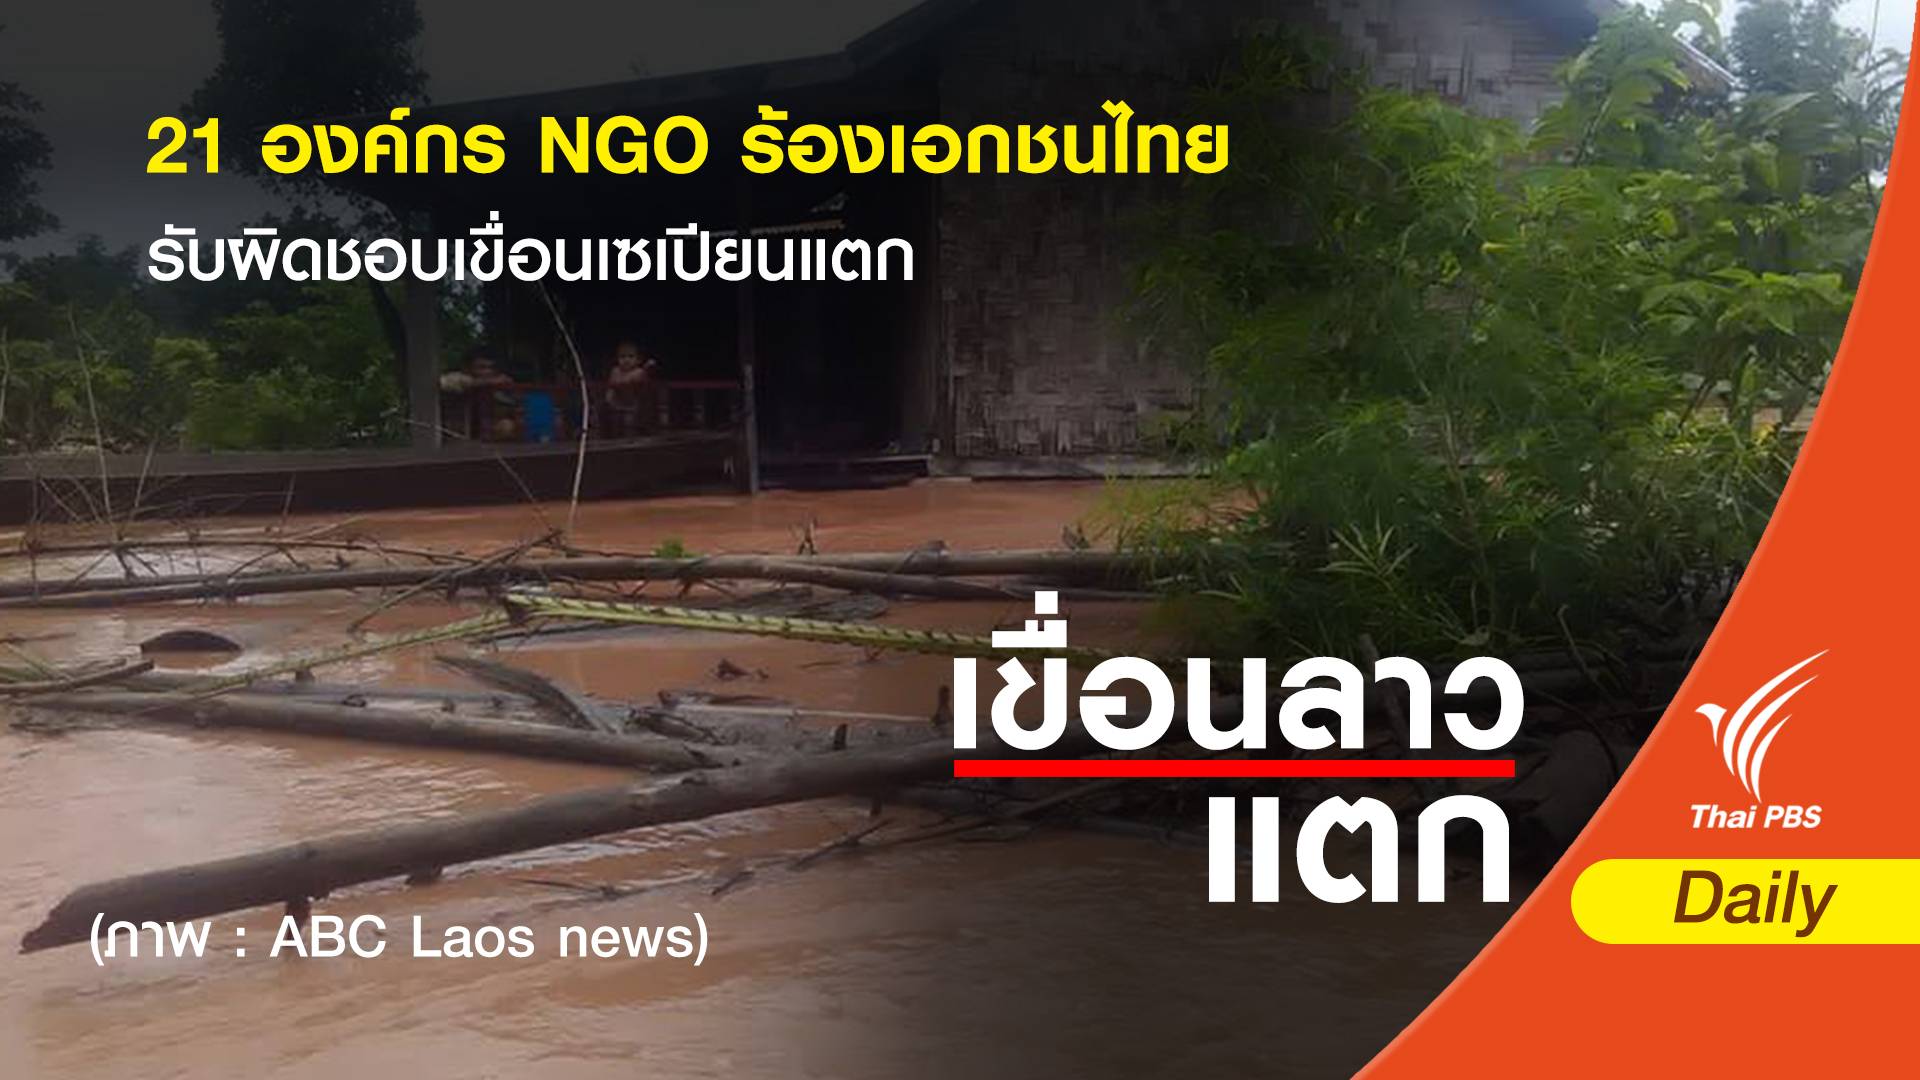  21 องค์กร NGO ร้องเอกชนไทยรับผิดชอบเขื่อนเซเปียนแตก